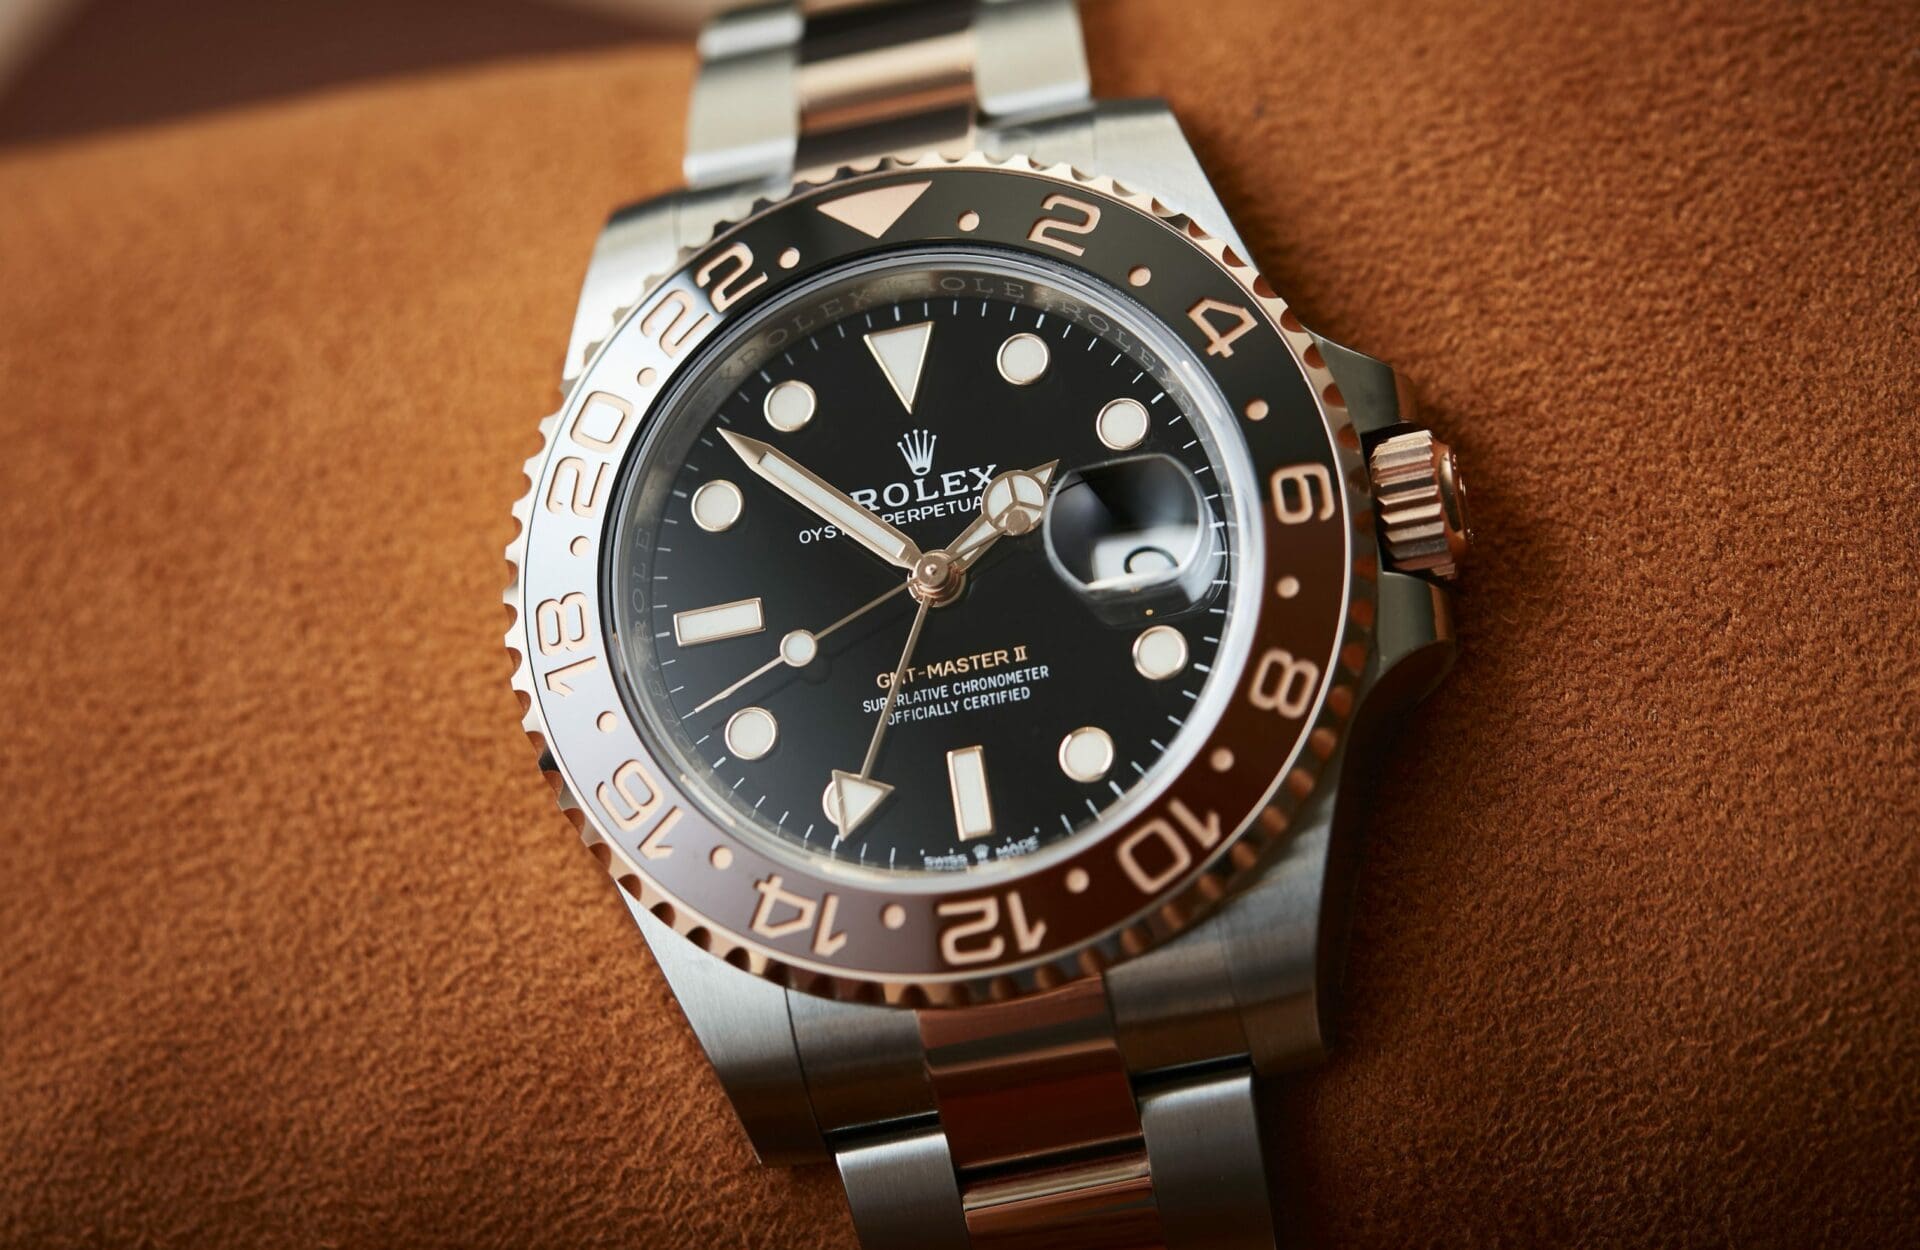 Rolex watch shortage